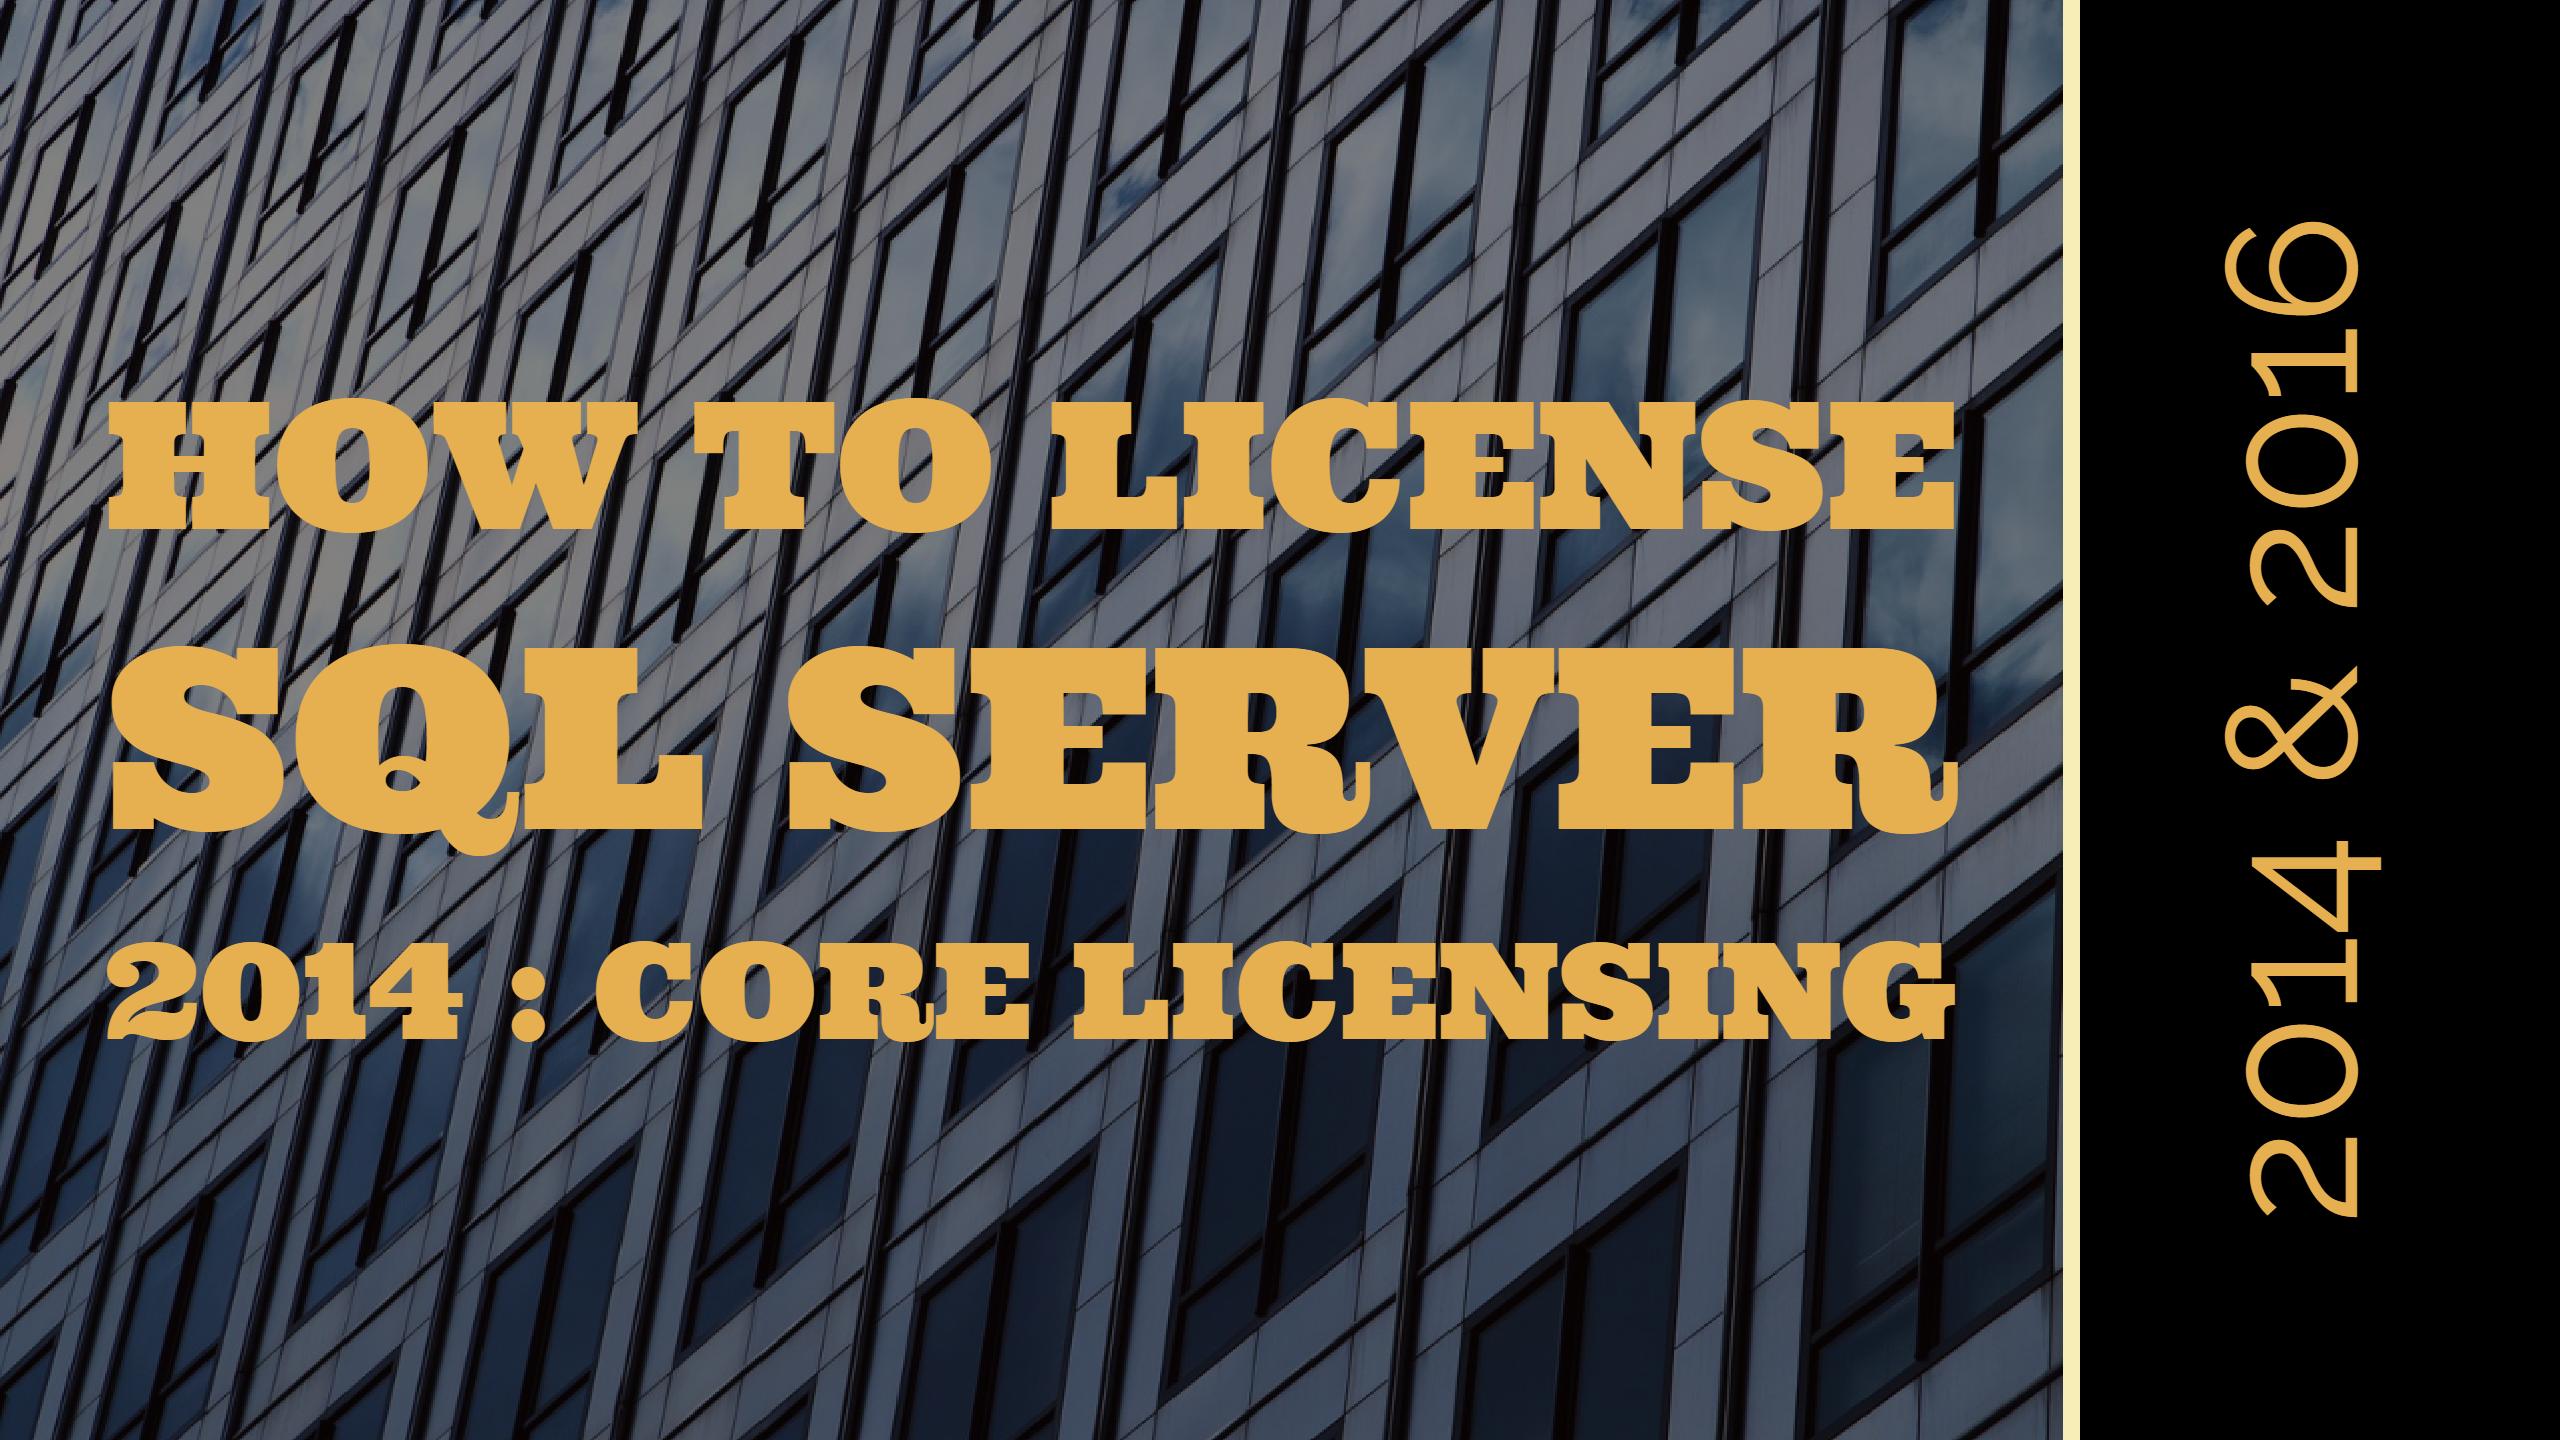 SQL Server 2014 Core Licensing